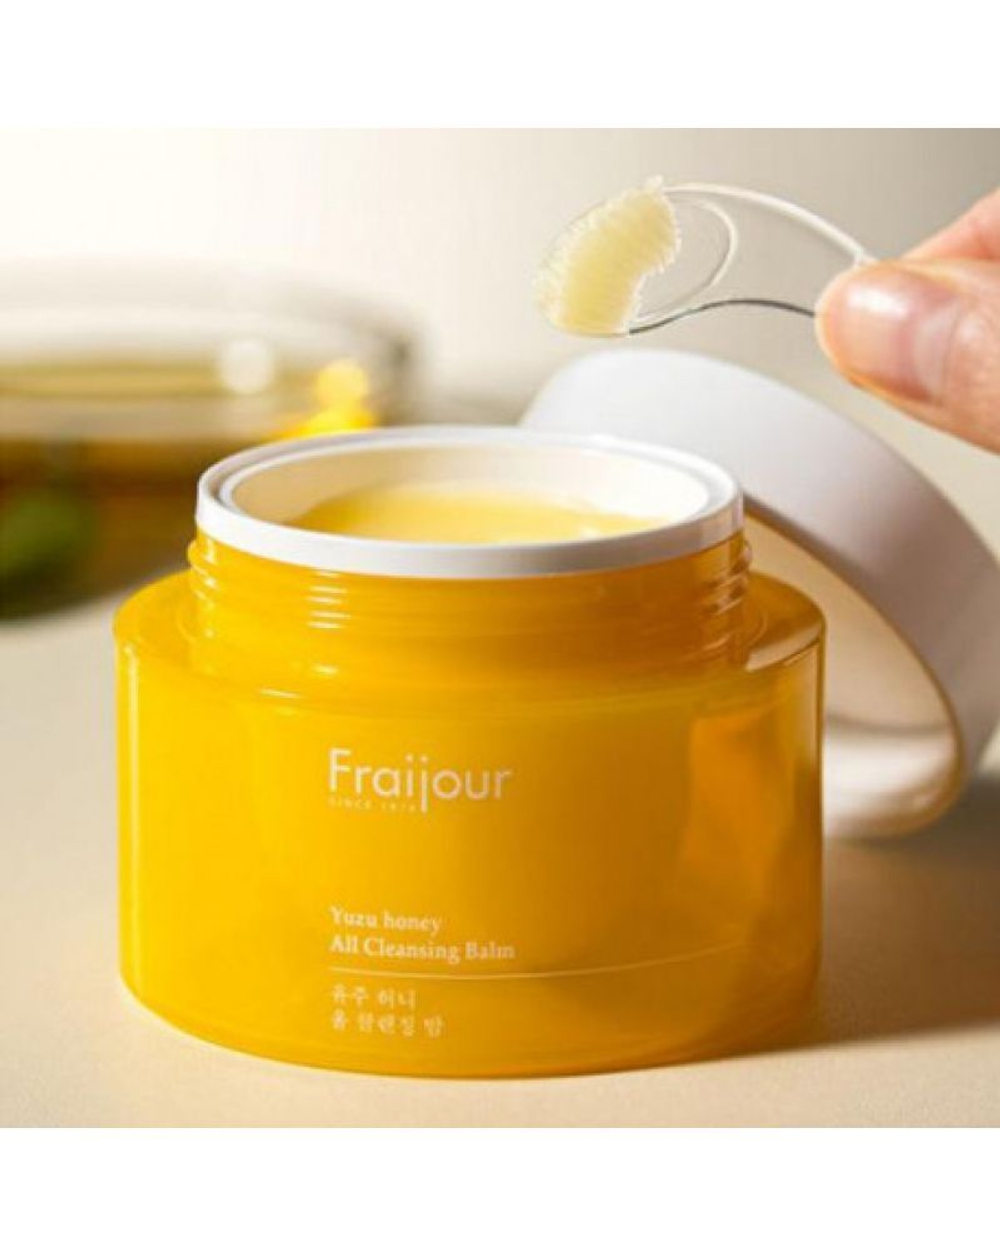 Evas Fraijour Yuzu Honey All Cleansing Balm гидрофильный бальзам для сияния кожи с прополисом и экстрактом Юдзу